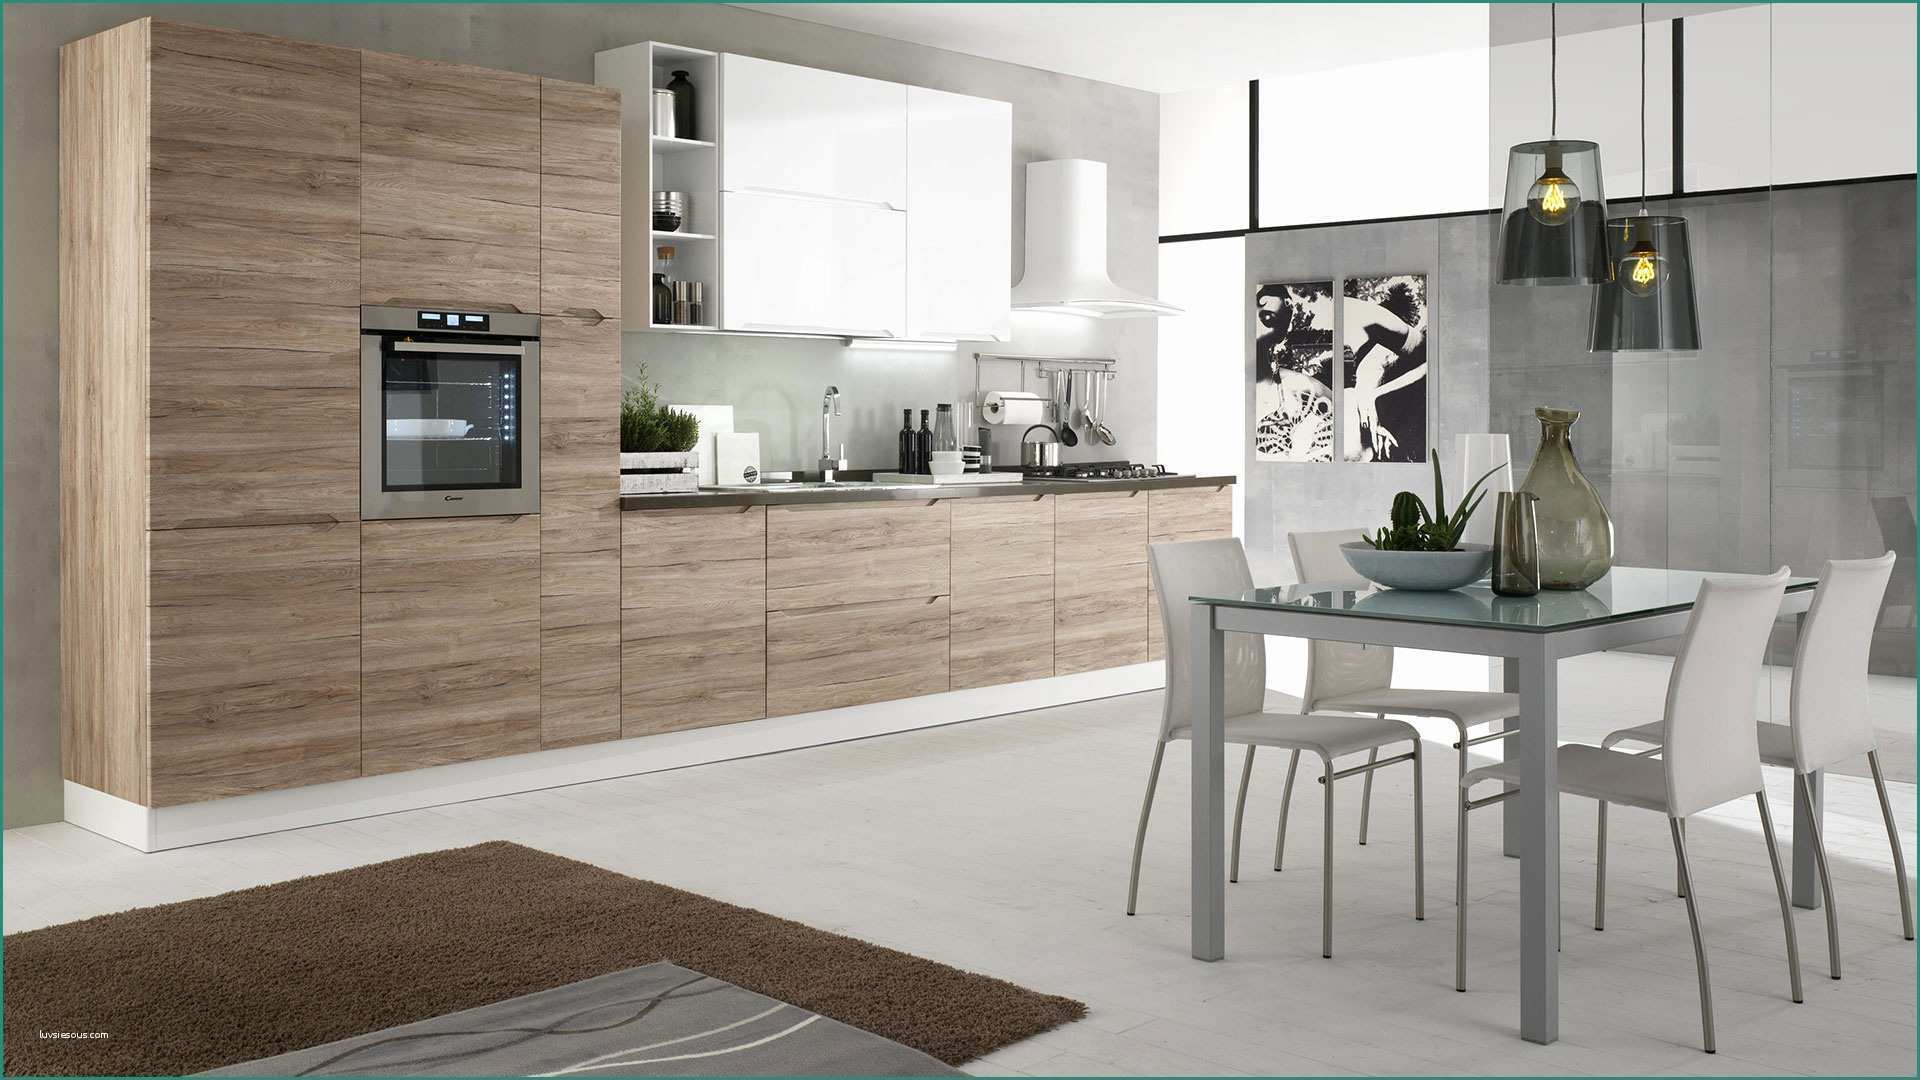 Offerte Cucine Moderne E Immagini Di Cucine Moderne Excellent soggiorno Open Space soggiorno